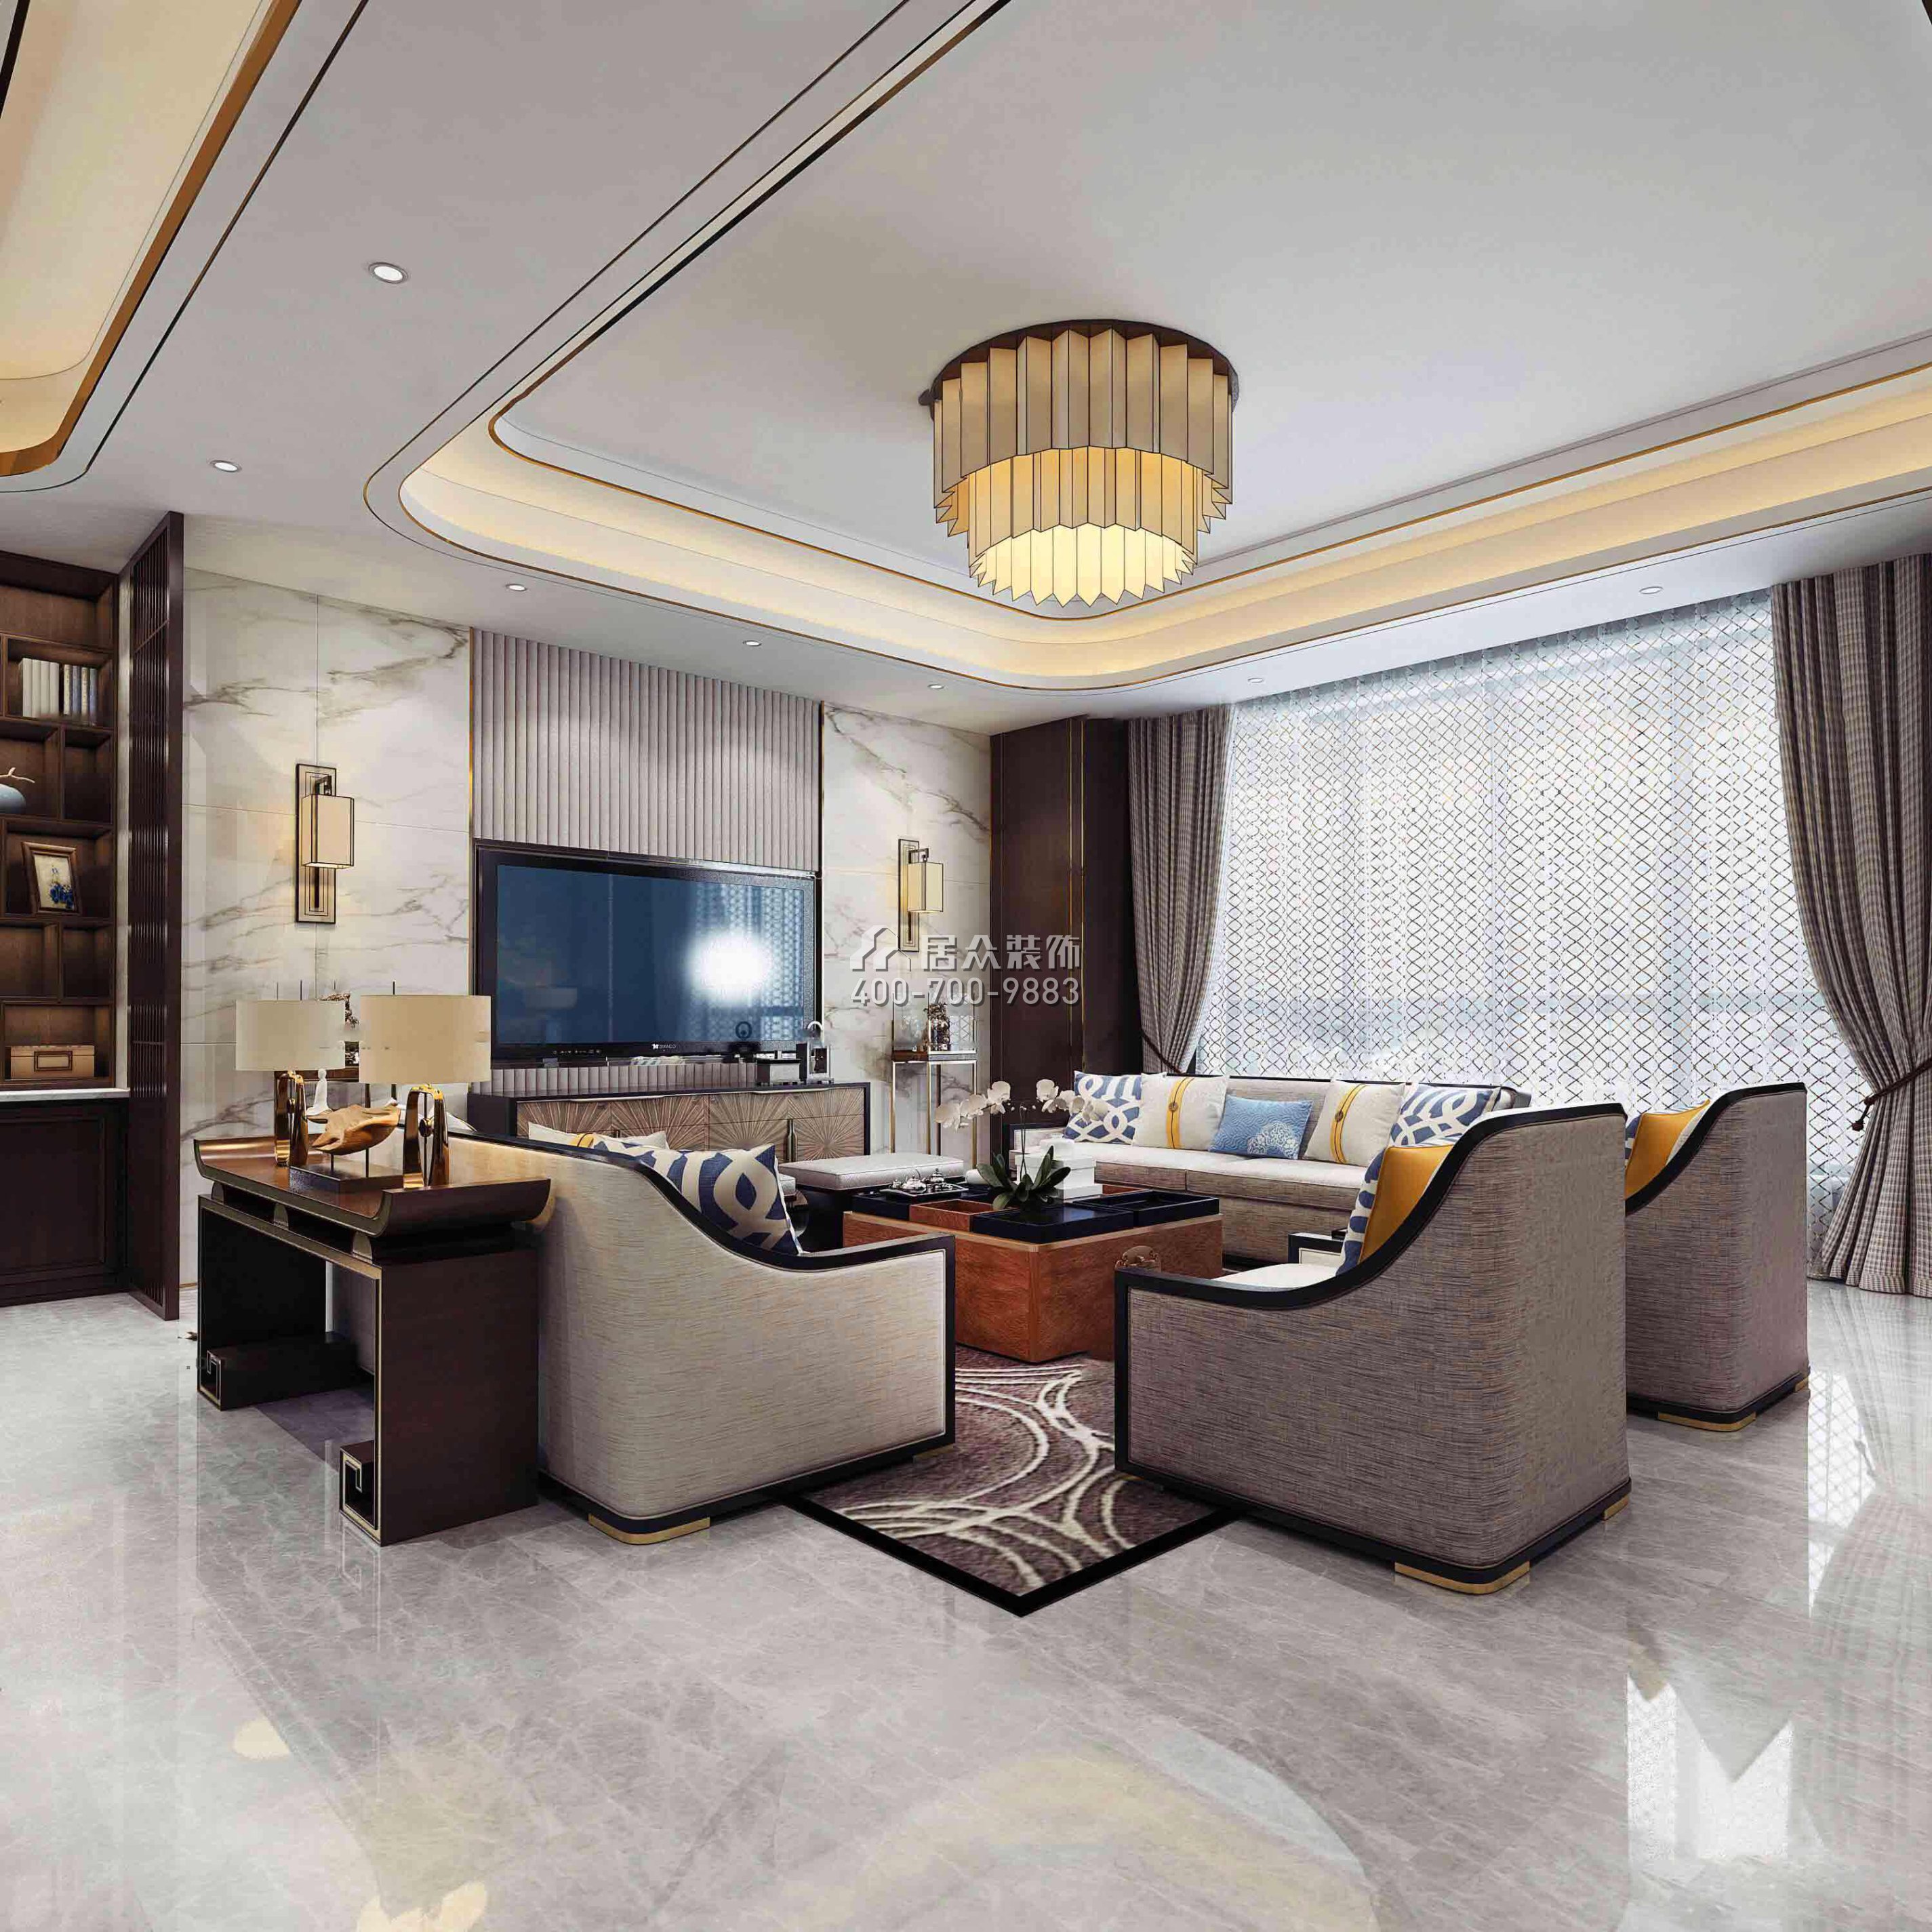 華發新城226平方米中式風格平層戶型客廳裝修效果圖